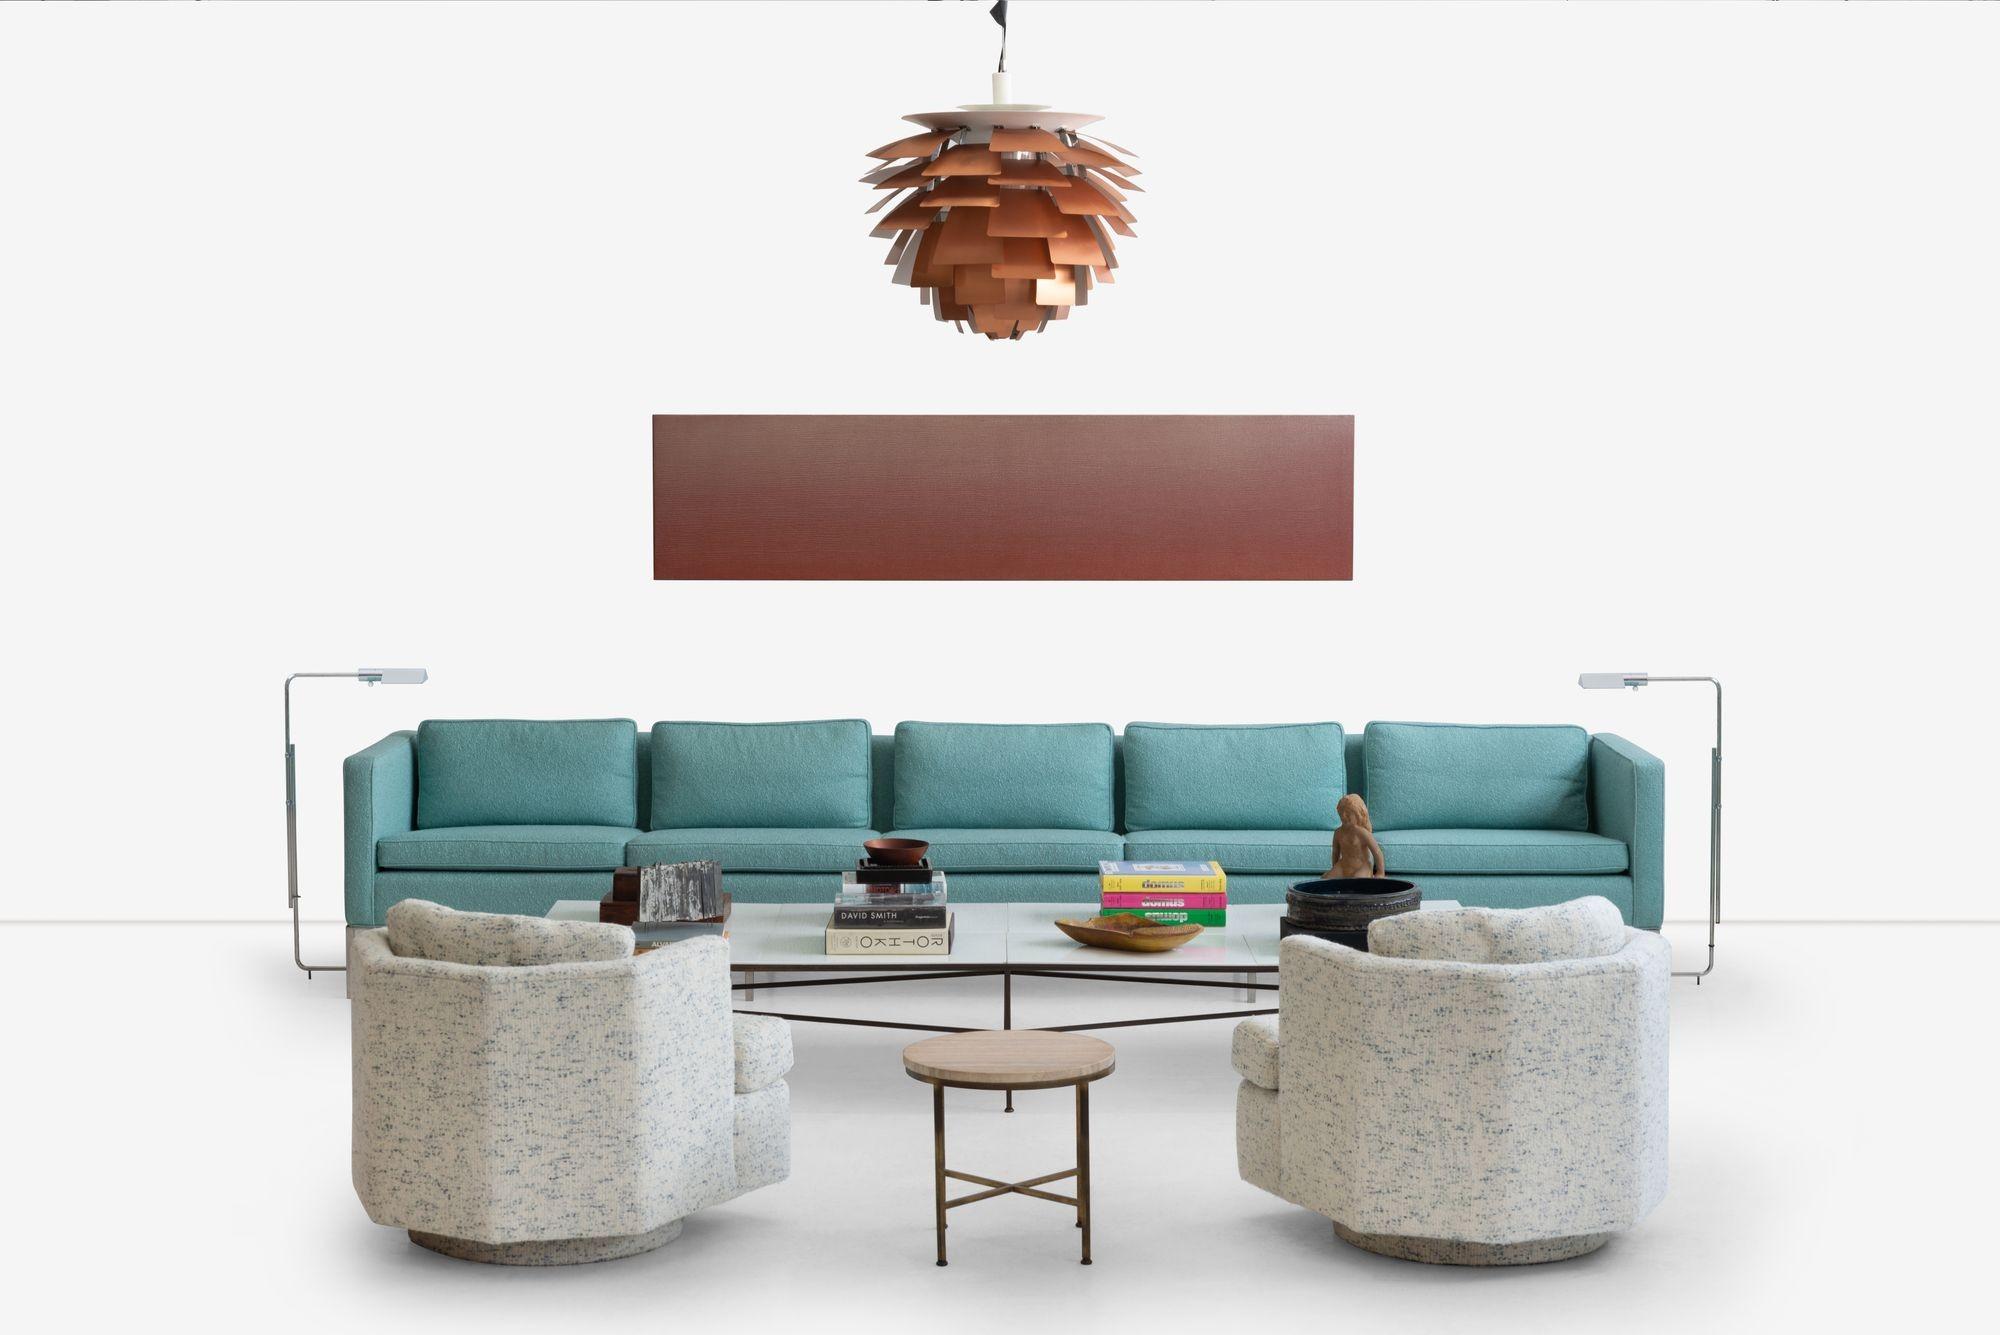 Das William Armbruster Custom Designed Monumental Five-Seat Sofa für die Chase Manhattan Executive Offices, verkörpert Luxus und Raffinesse. Mit fachmännischer Handwerkskunst gefertigt, ist dieses große Sofa in Wolle Boucle mit einem verchromten